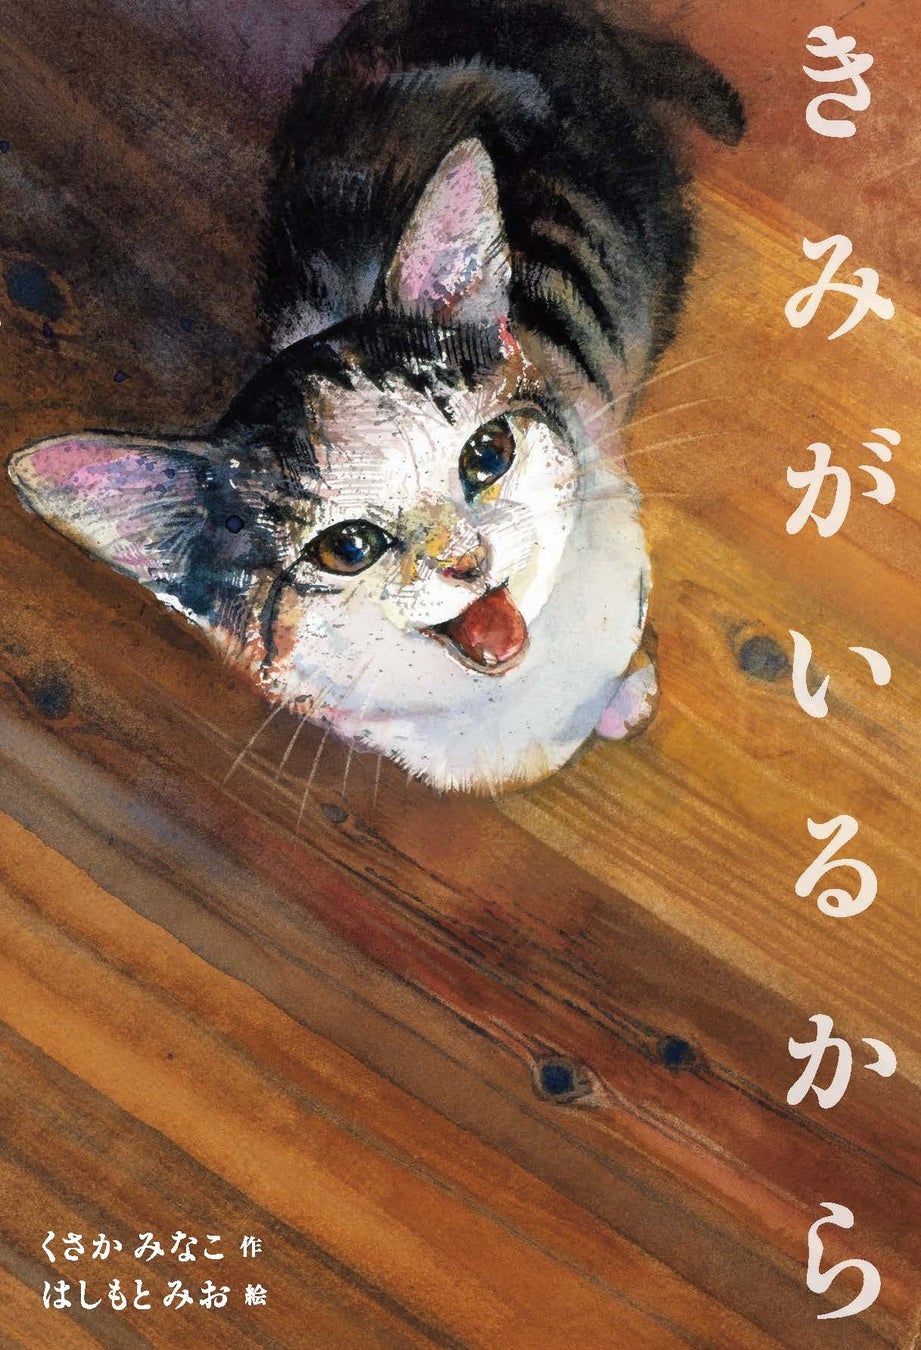 絵本作家くさかみなこ・彫刻家はしもとみおによる、愛猫との暮らしを描いた絵本『きみがいるから』パネル展が...